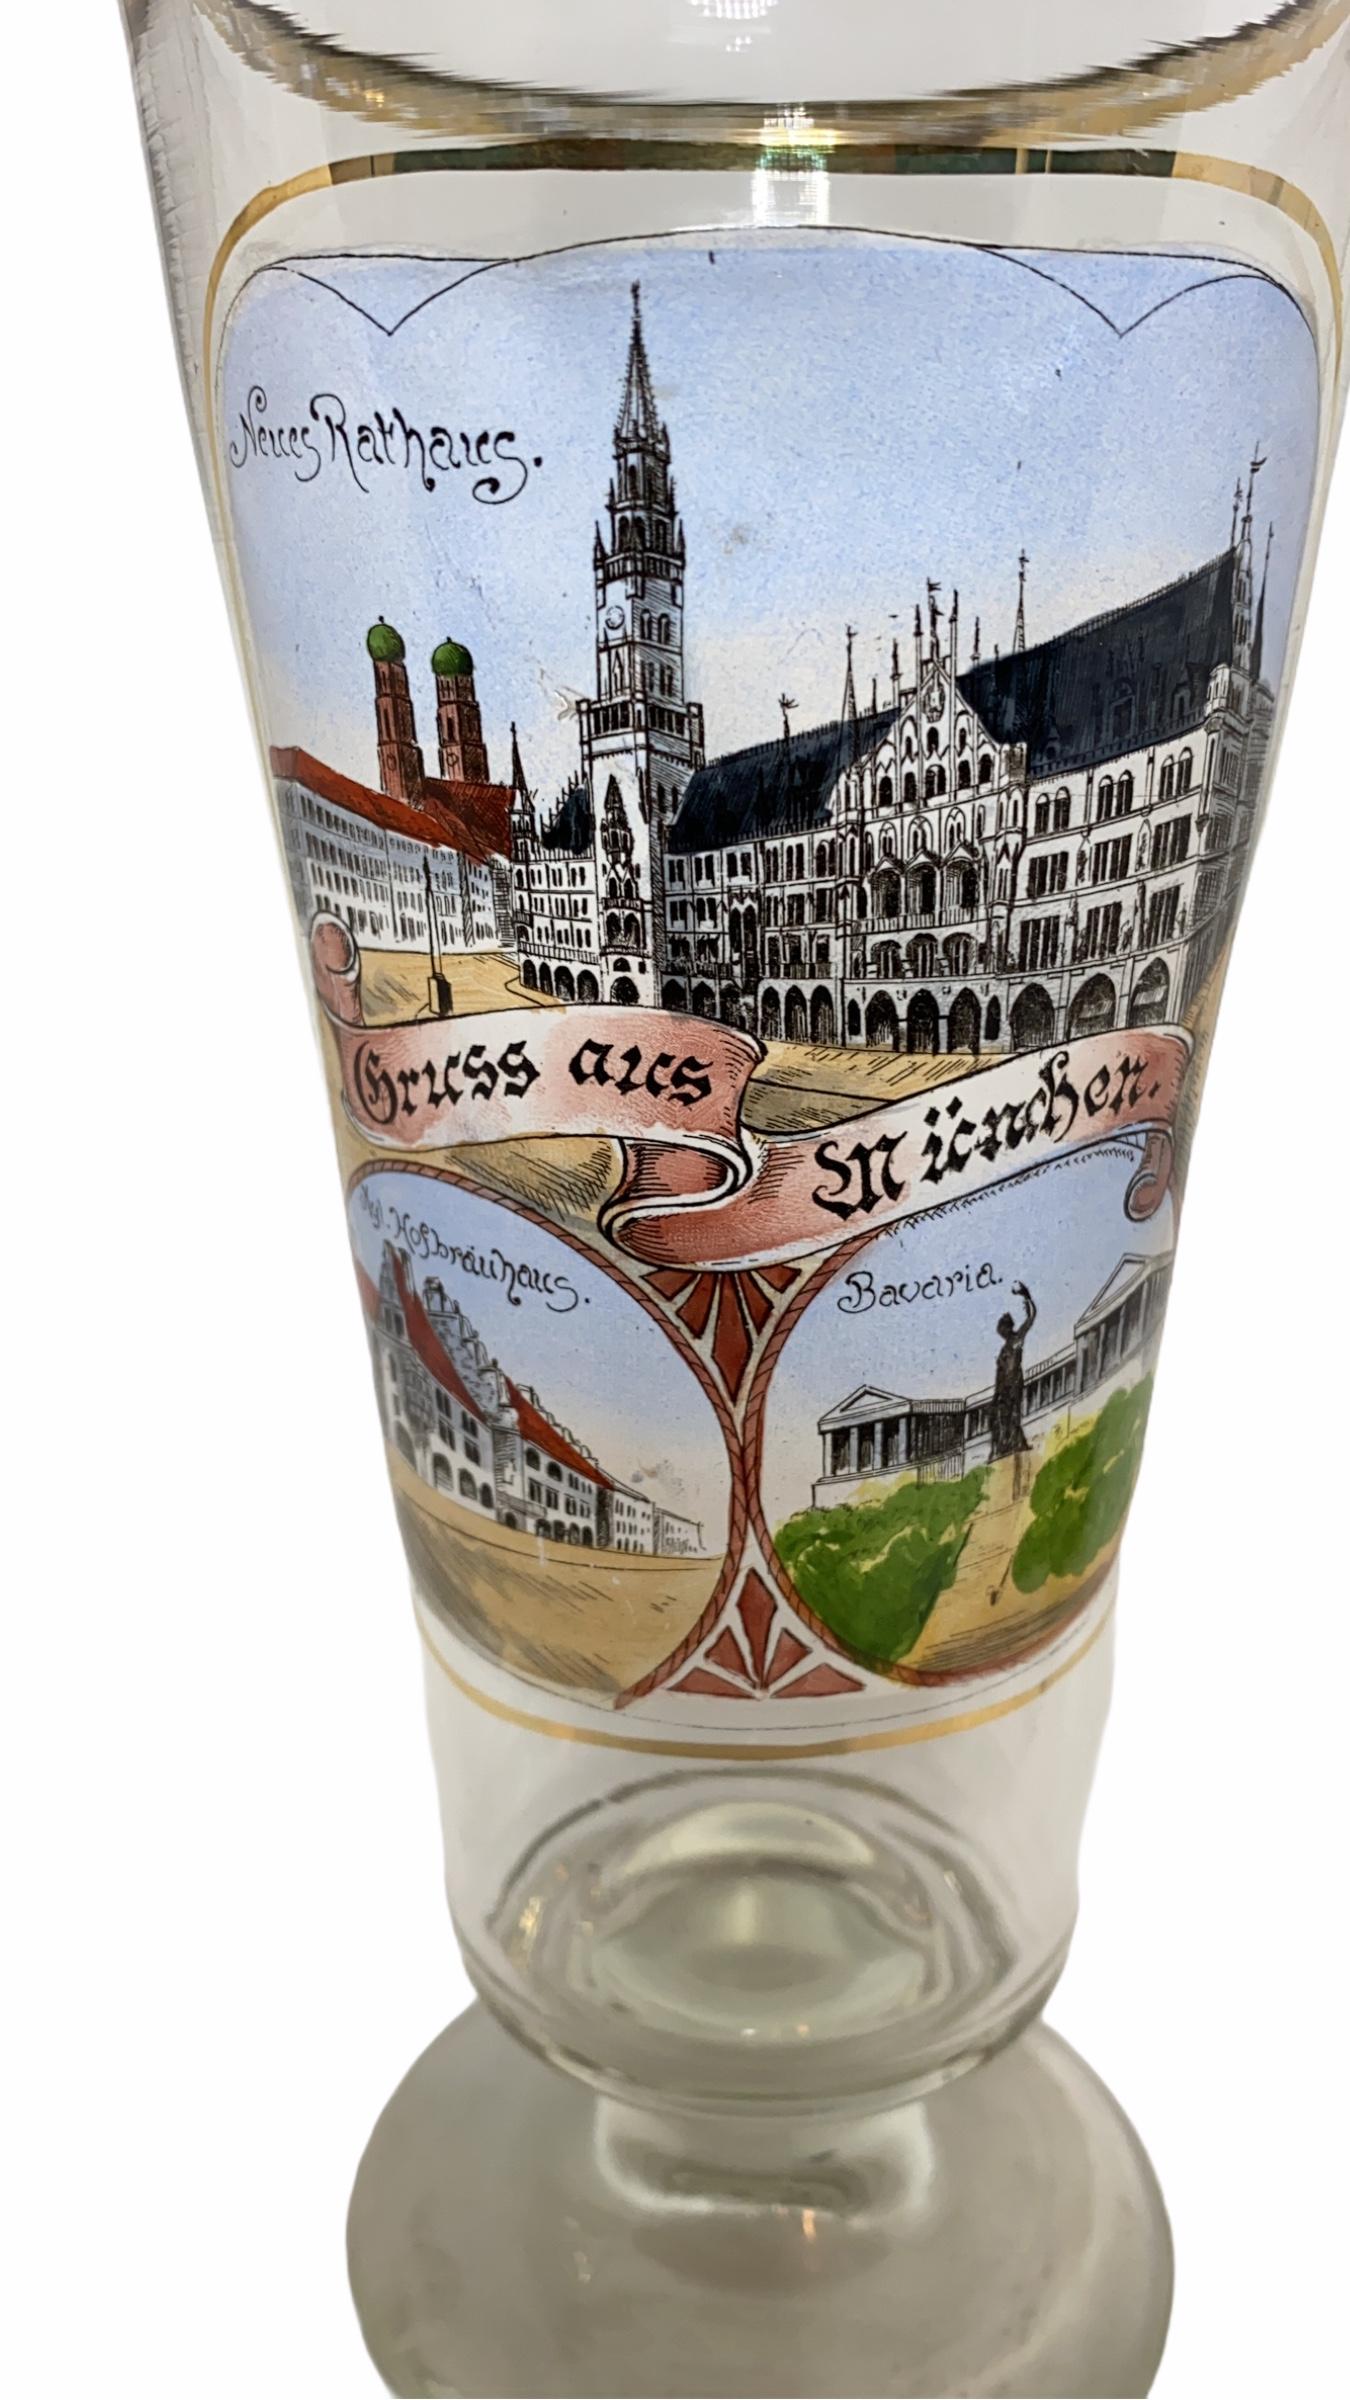 Un magnifique verre à bière Munich de caractère. Il a été fabriqué en Allemagne, dans les années 1900. Pièce absolument magnifique peinte à la main et toujours en excellent état, sans dommage. Montre quelques bâtiments et lieux importants de Munich.